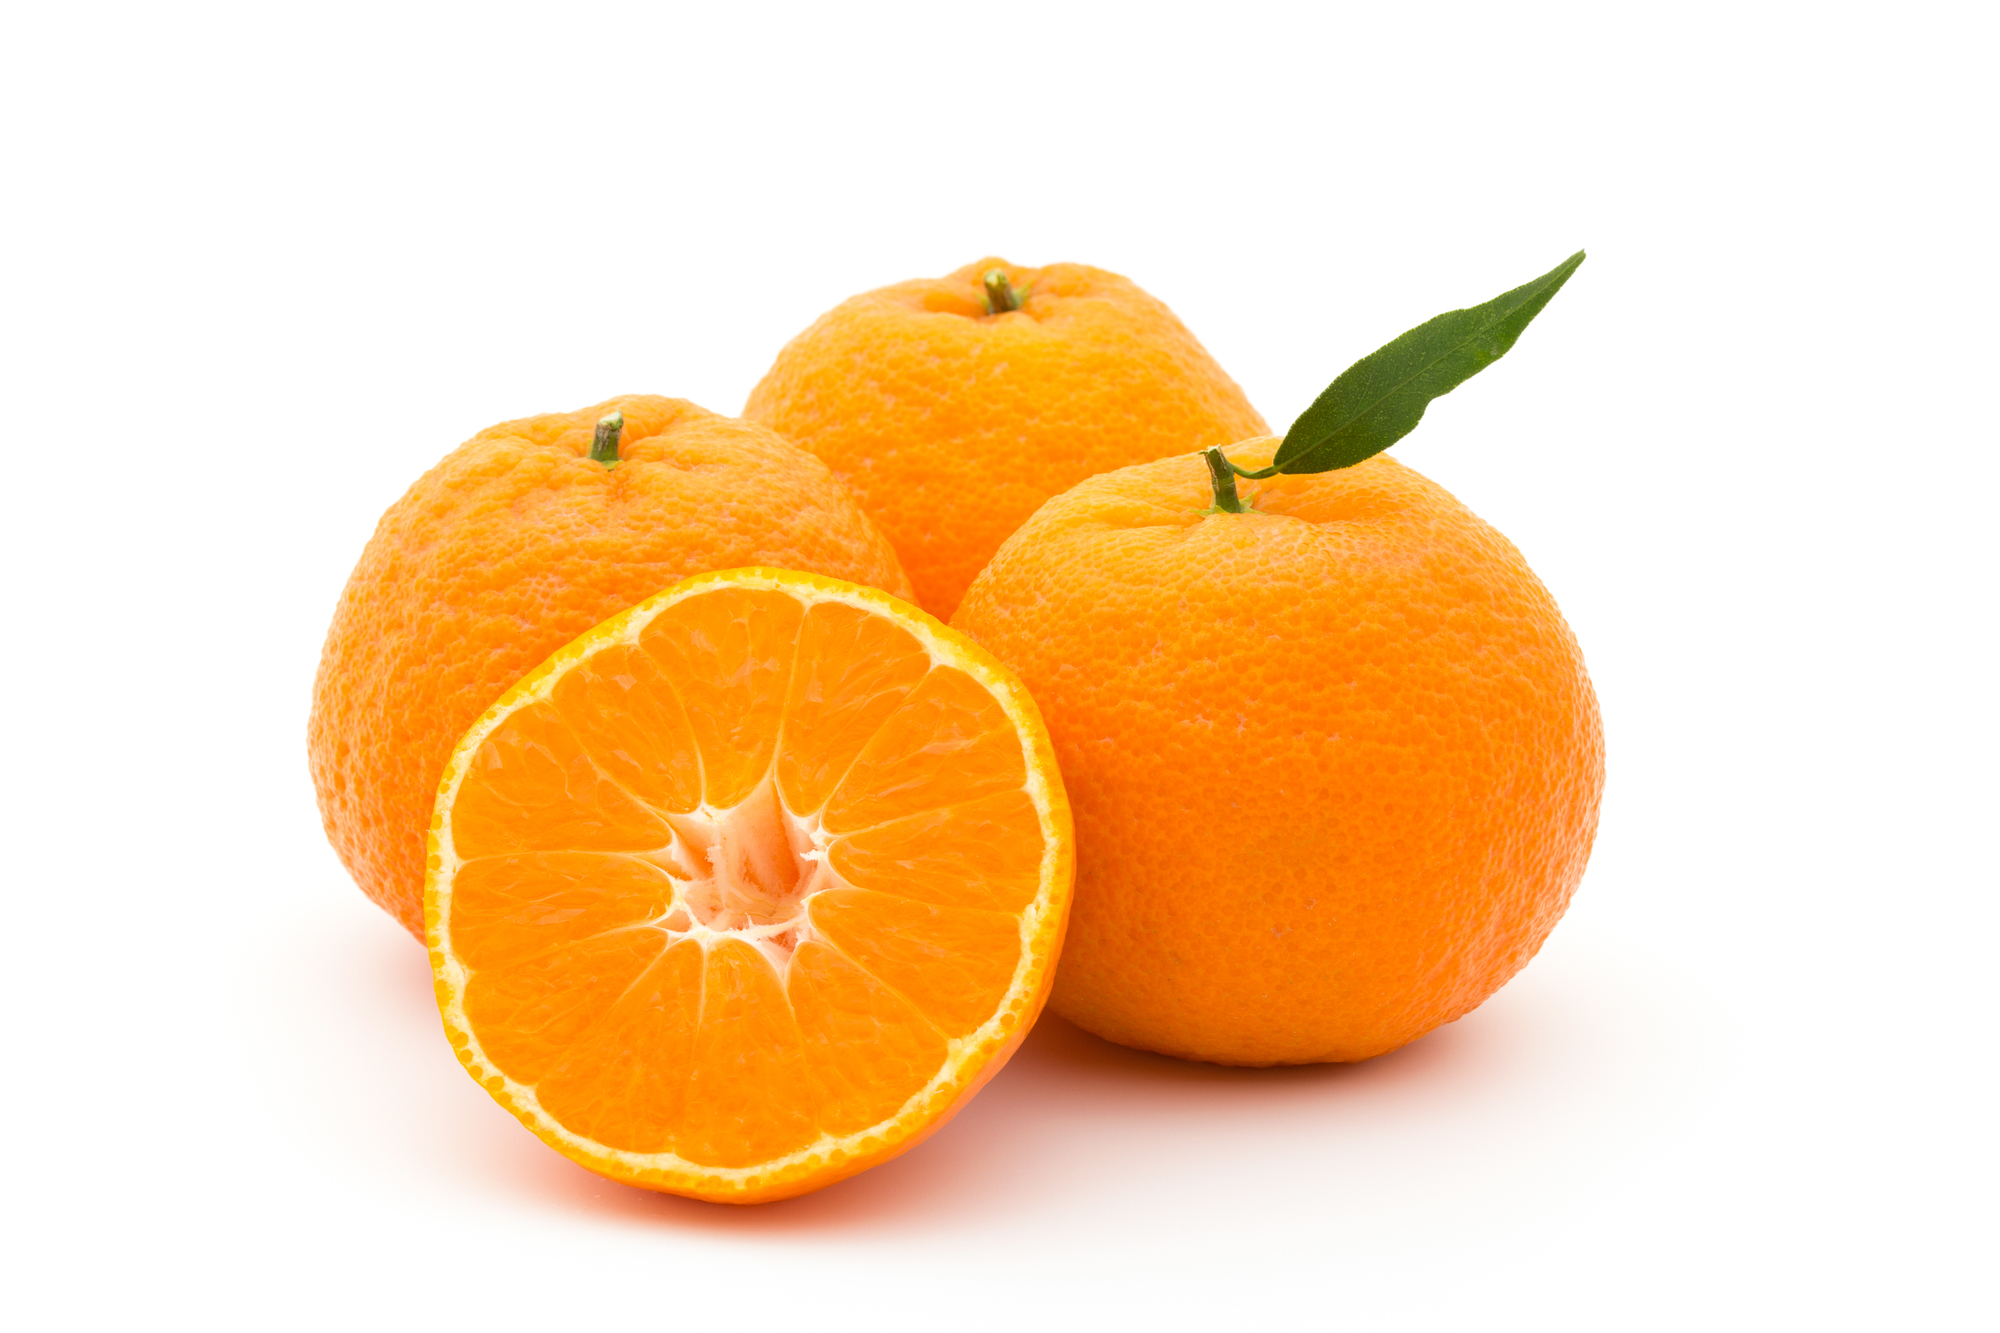 オレンジを冷凍 保存 解凍調理する方法 専門家監修の食品冷凍情報サイト おいしい冷凍研究所